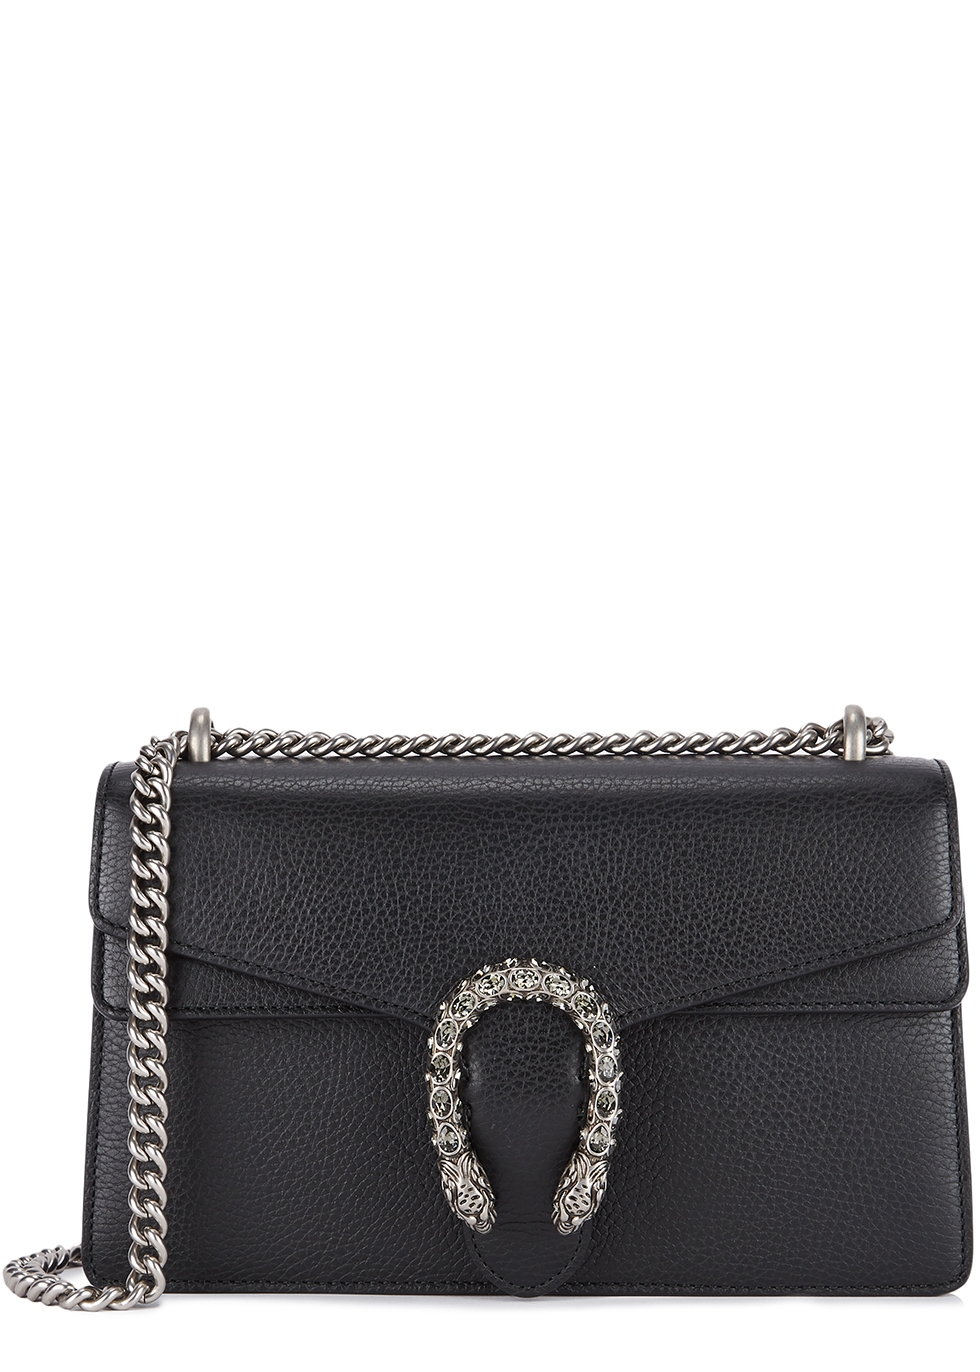 gucci small purse black